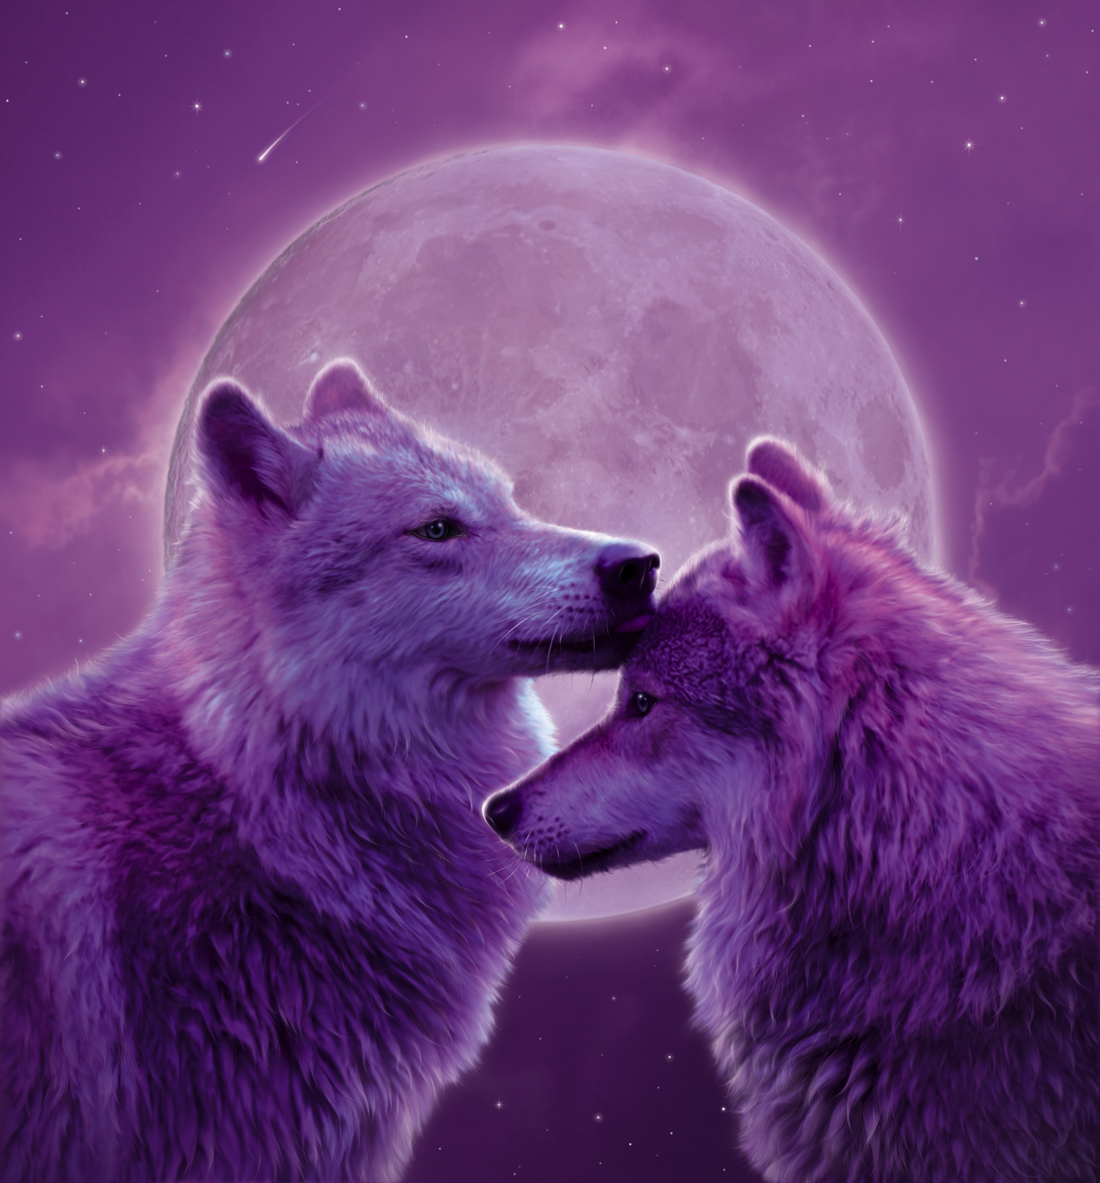 Loving Wolves